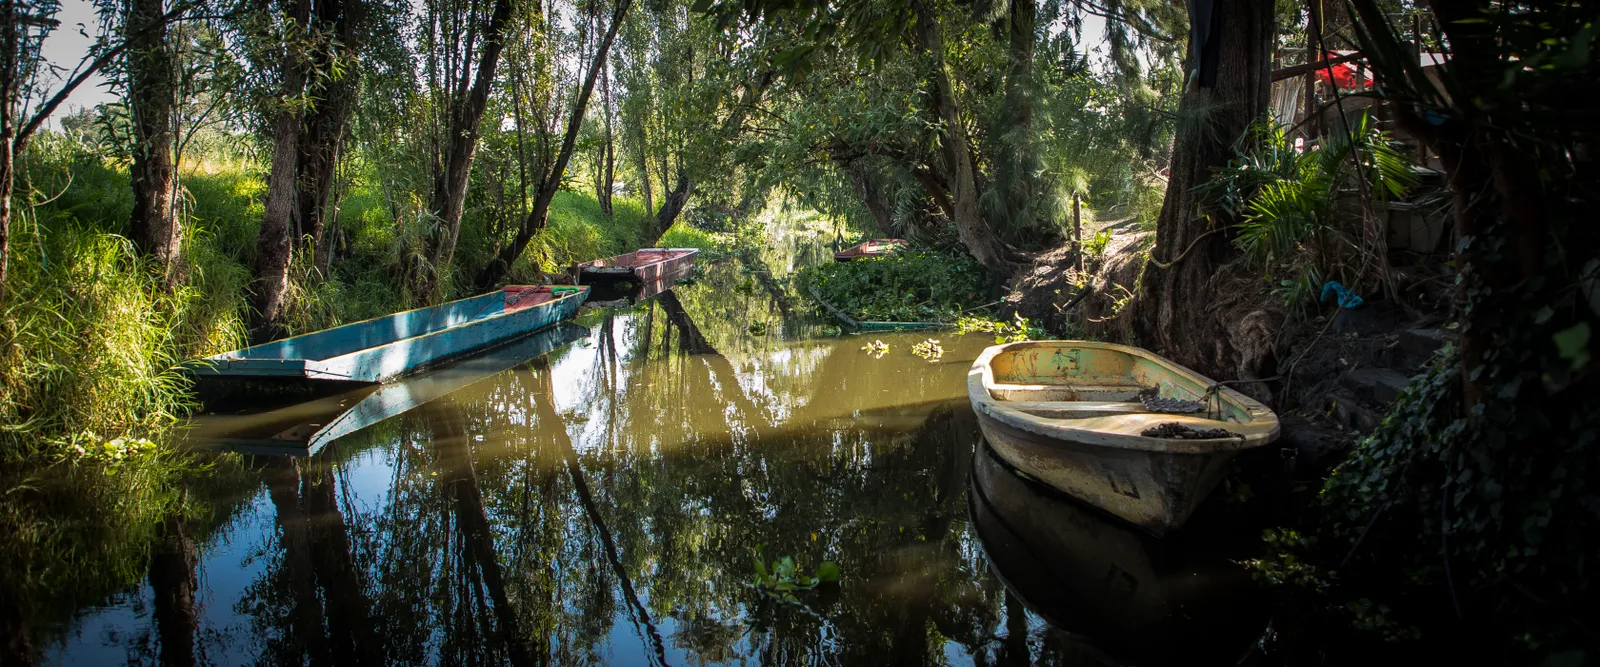 Parque Ecológico Xochimilco: los jardines flotantes de la era azteca ofrecen un camino hacia una alimentación sostenible